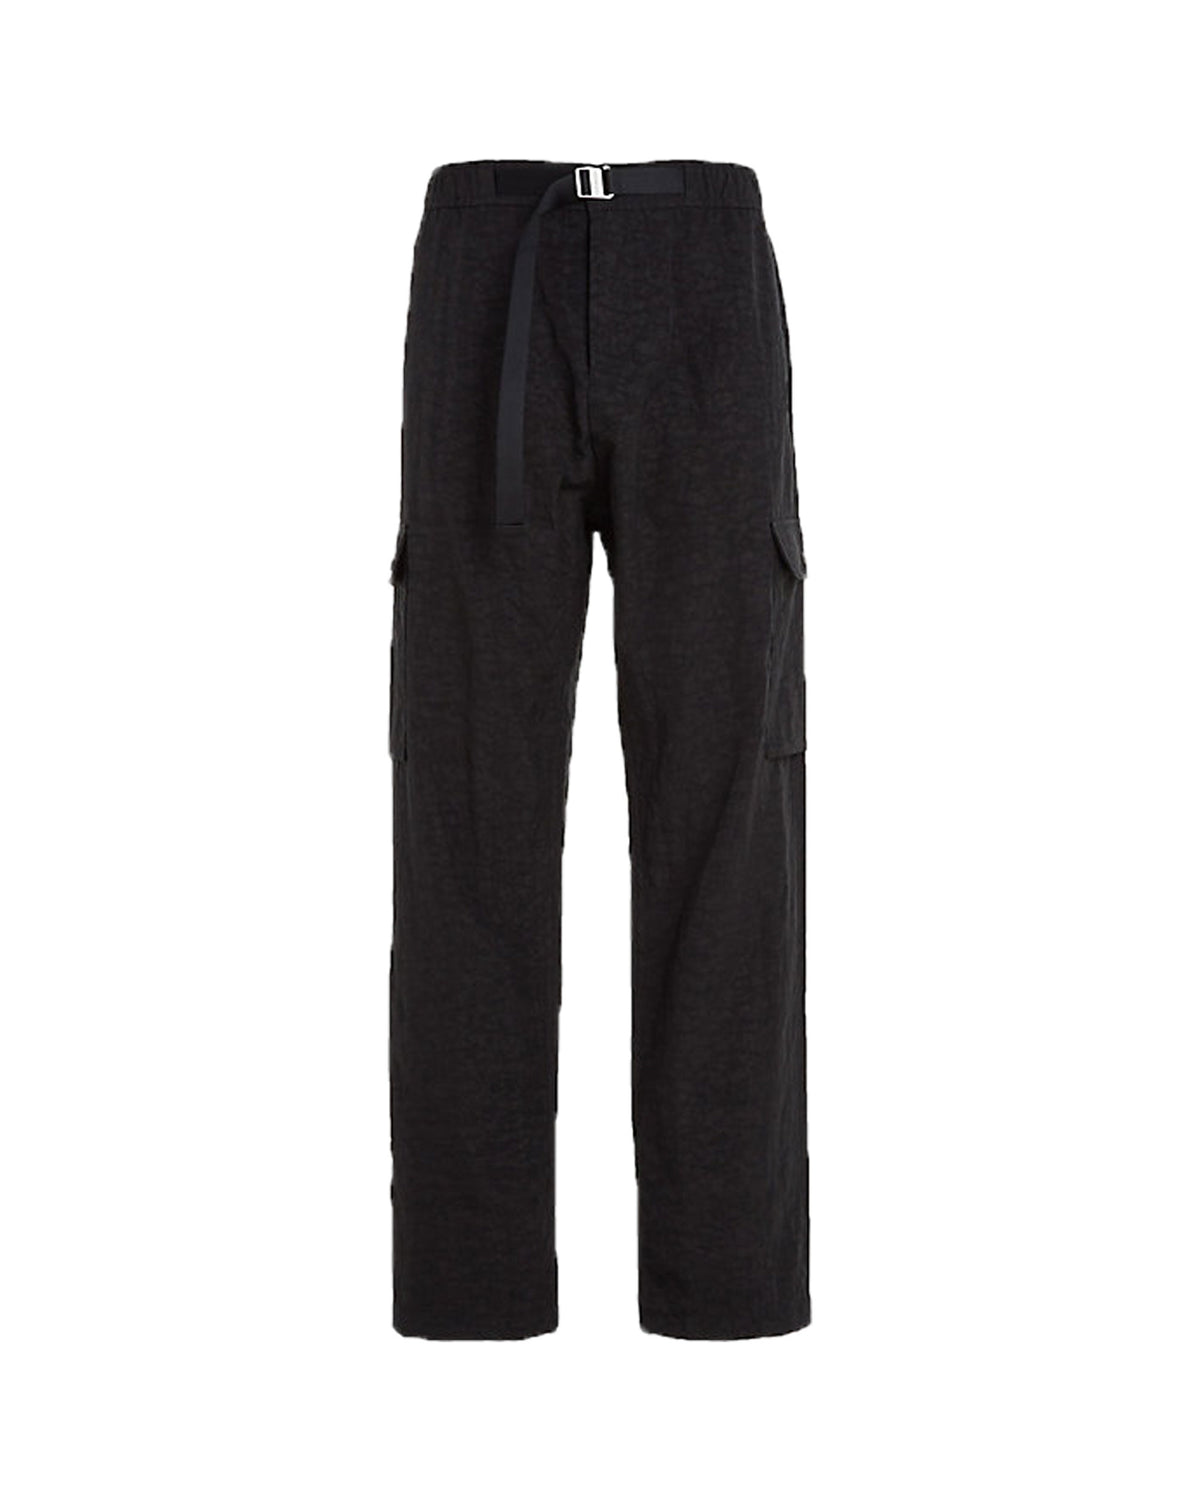 Pantalone Uomo Calvin Klein Jeans Nylon Oxford Cargo Nero